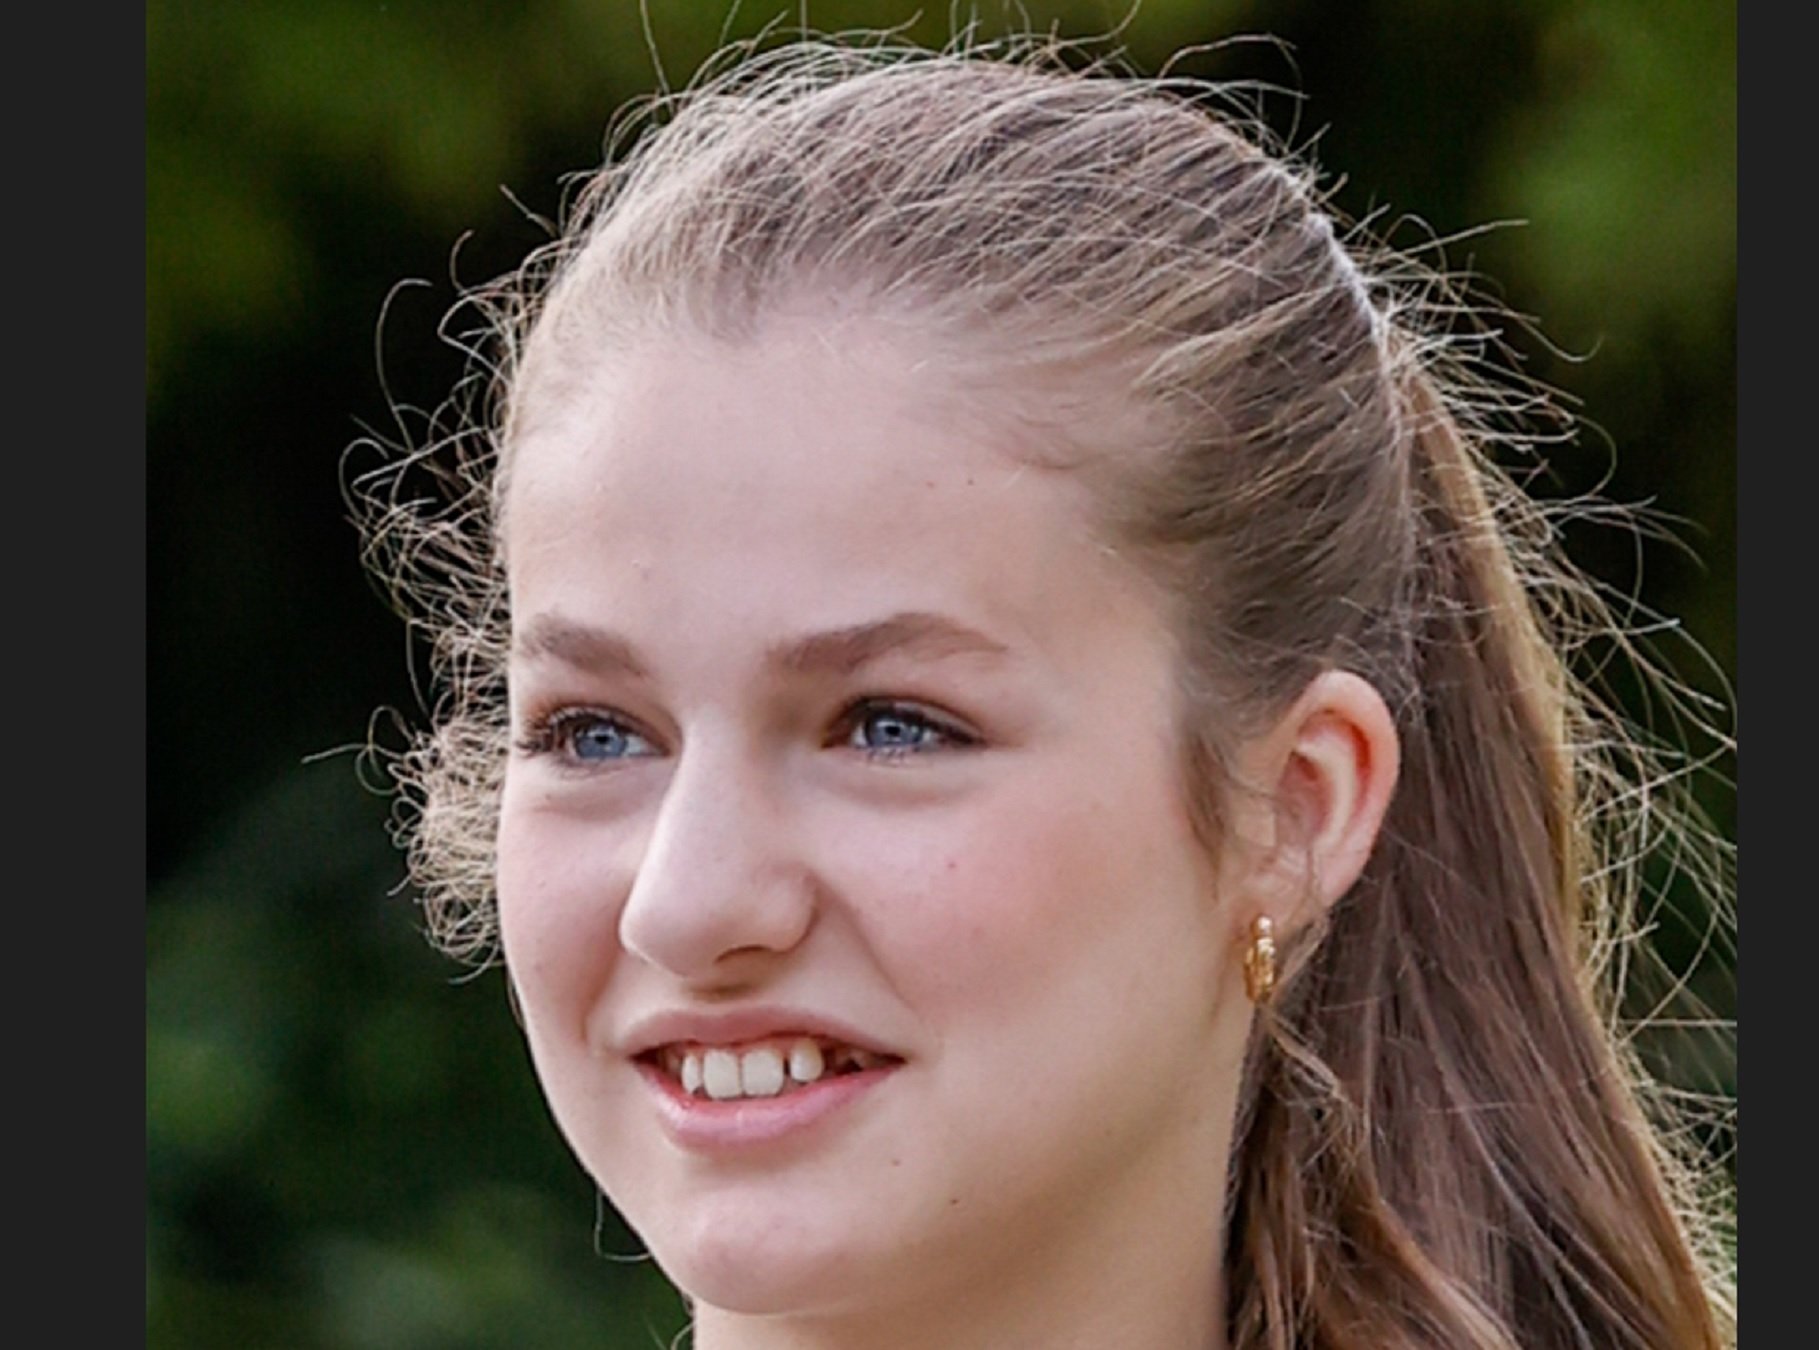 El gran misteri extraoficial d'Elionor amb 17 anys: el nòvio i la malaltia bucal